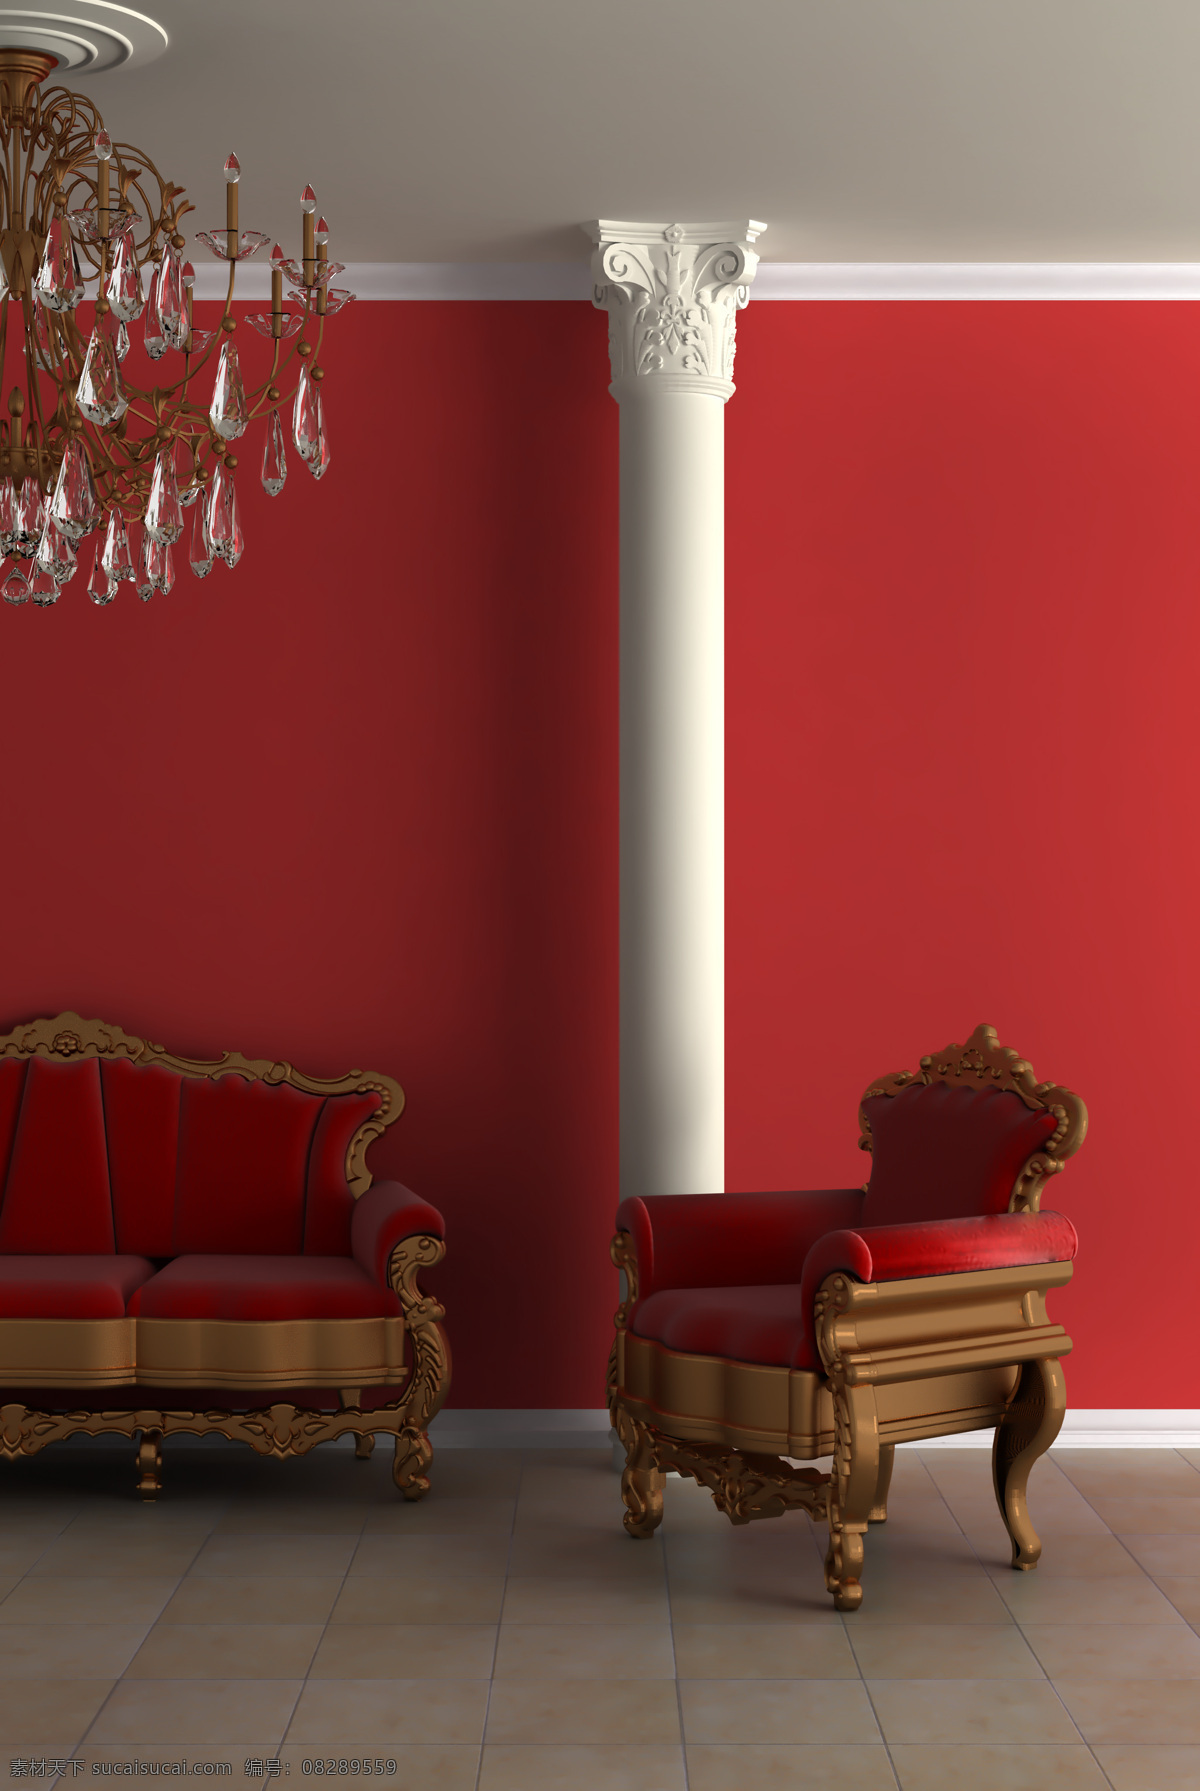 室内设计 风格 一角 室内装饰 室内一角 室内设计风格 欧式风格 环境家居 红色